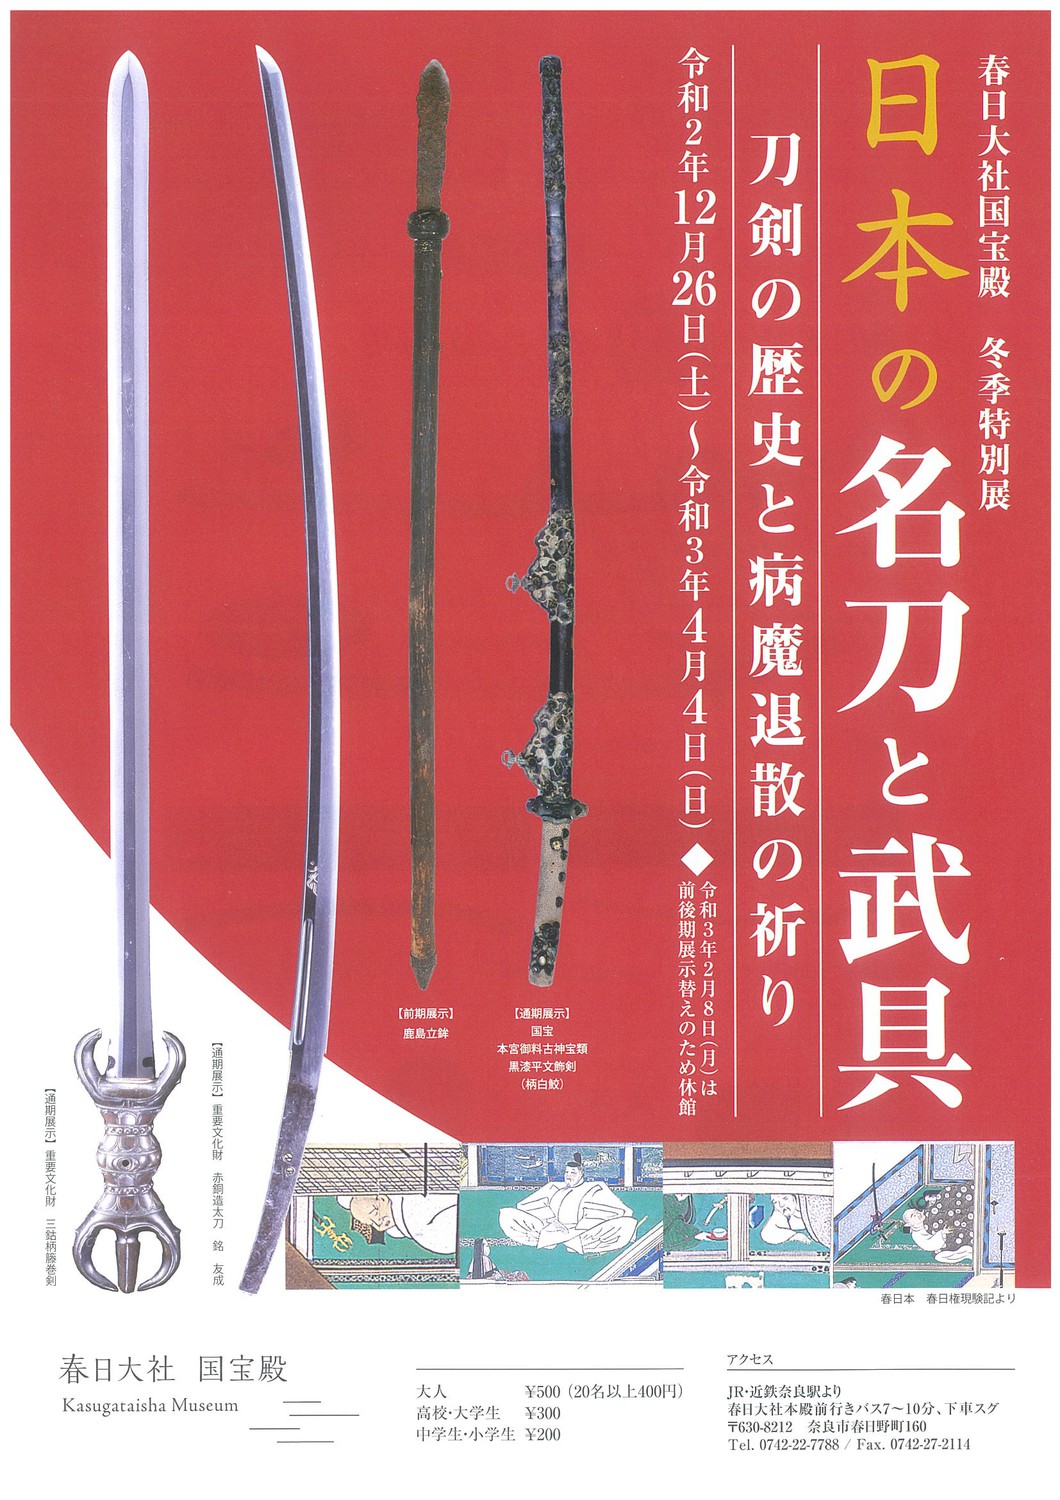 冬季特別展「日本の名刀と武具ー刀剣の歴史と病魔退散の祈り－」